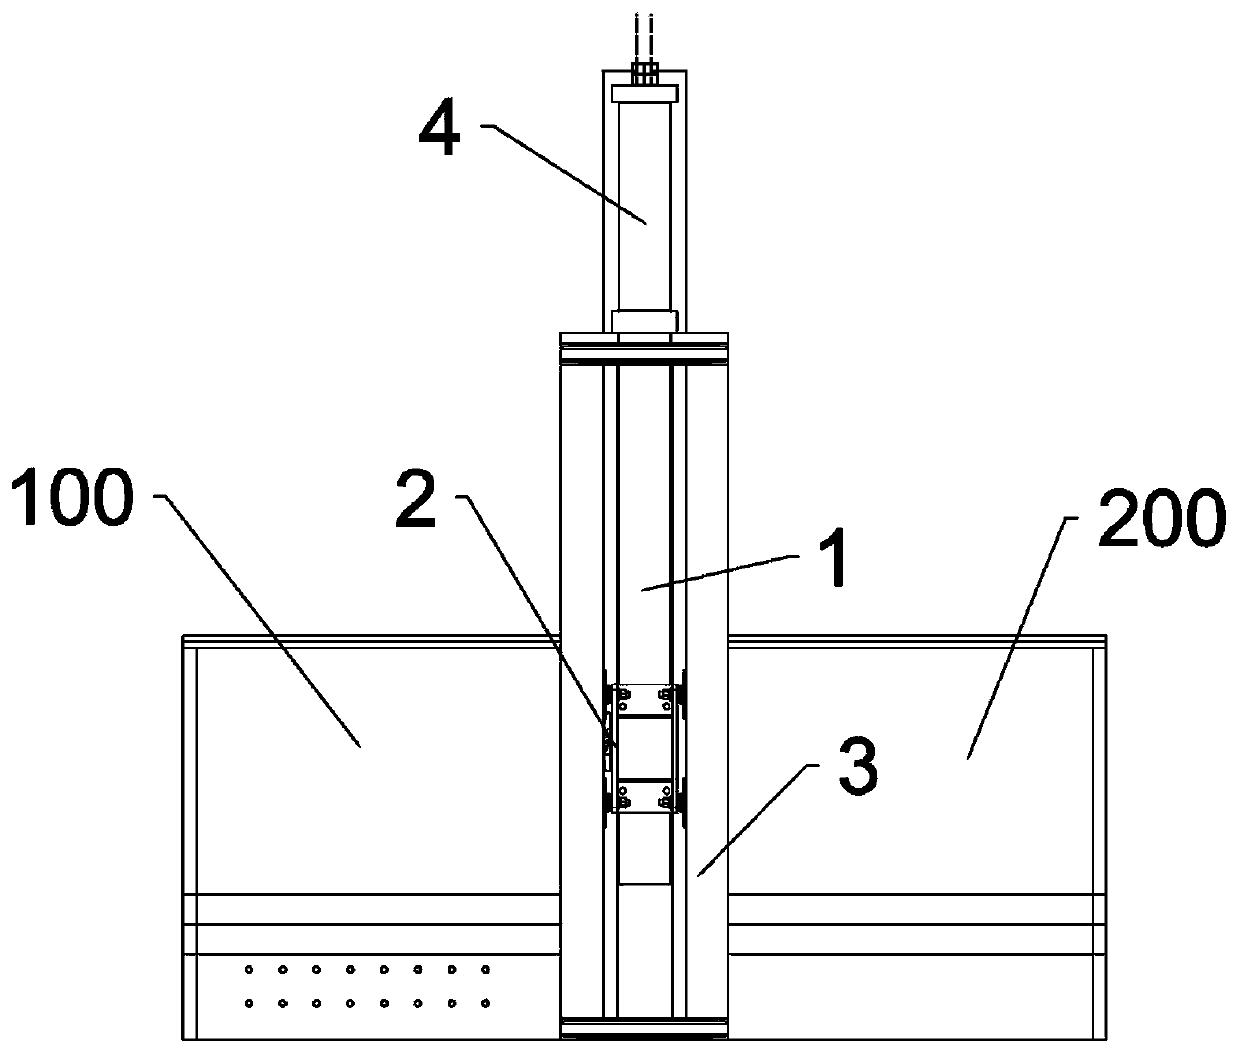 Middle door guide mechanism of garbage compressor